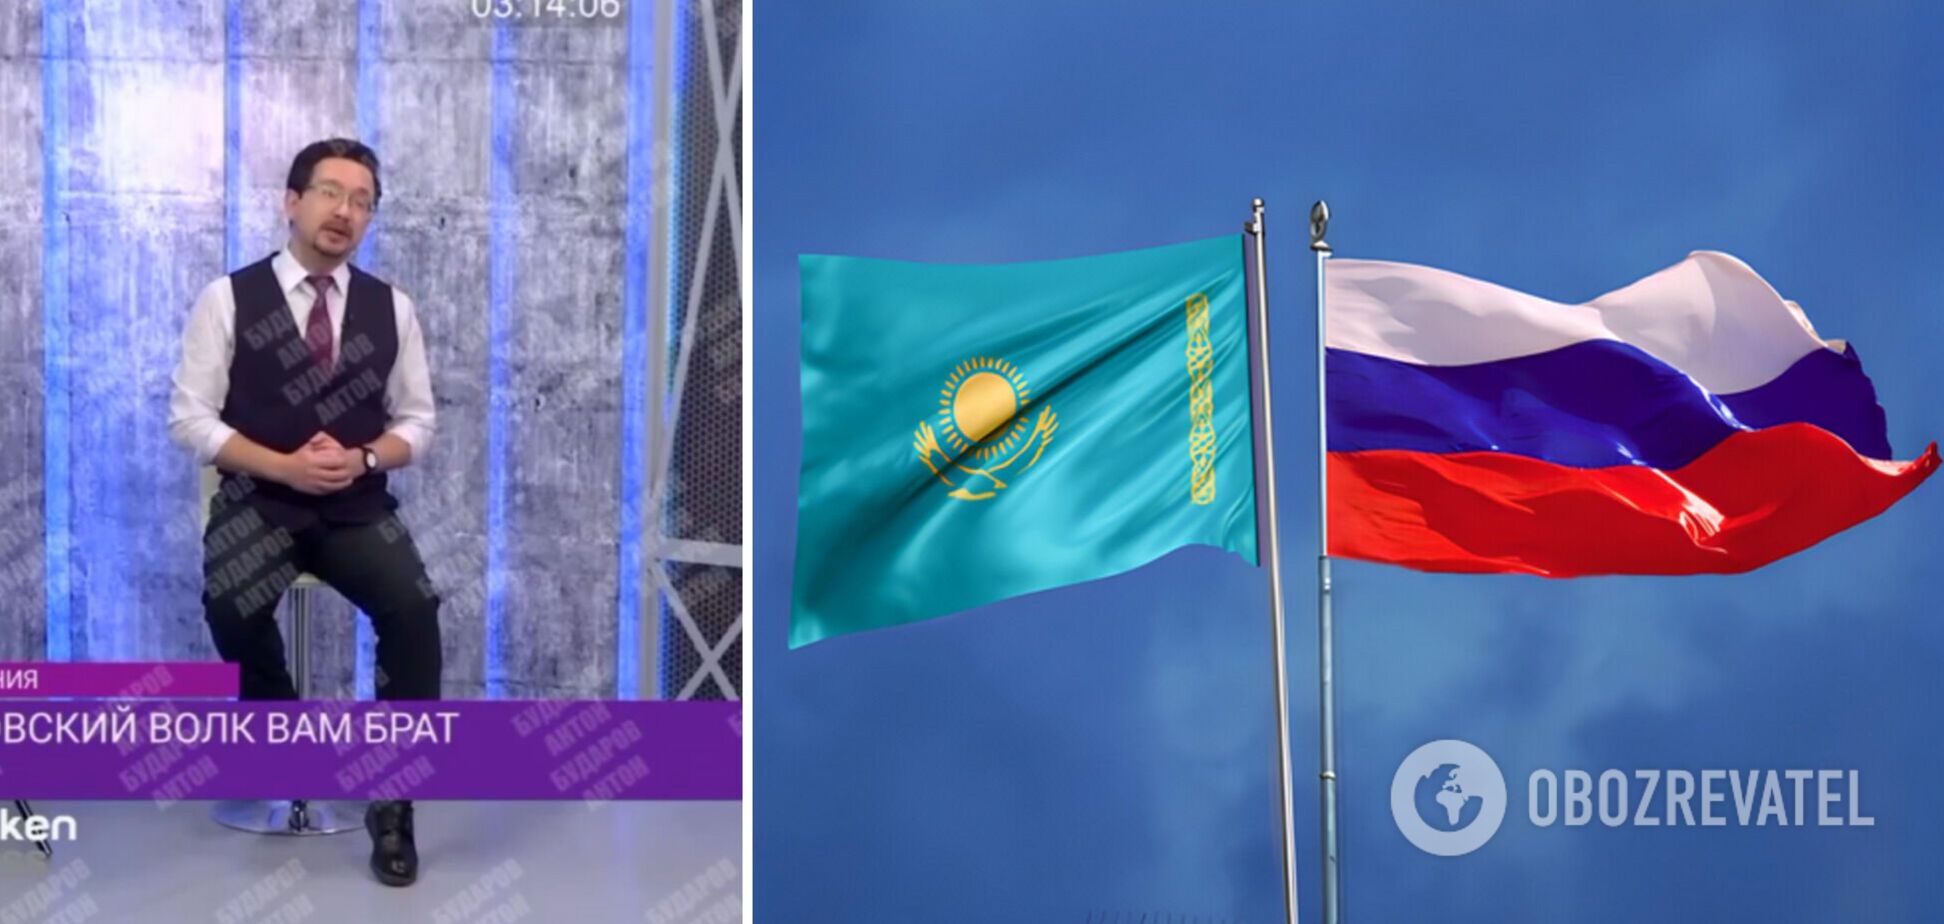 У Казахстані заявили, що Астрахань, Оренбург, Тюмень та Алтай завжди були казахськими, а не російськими: відео викликало ажіотаж